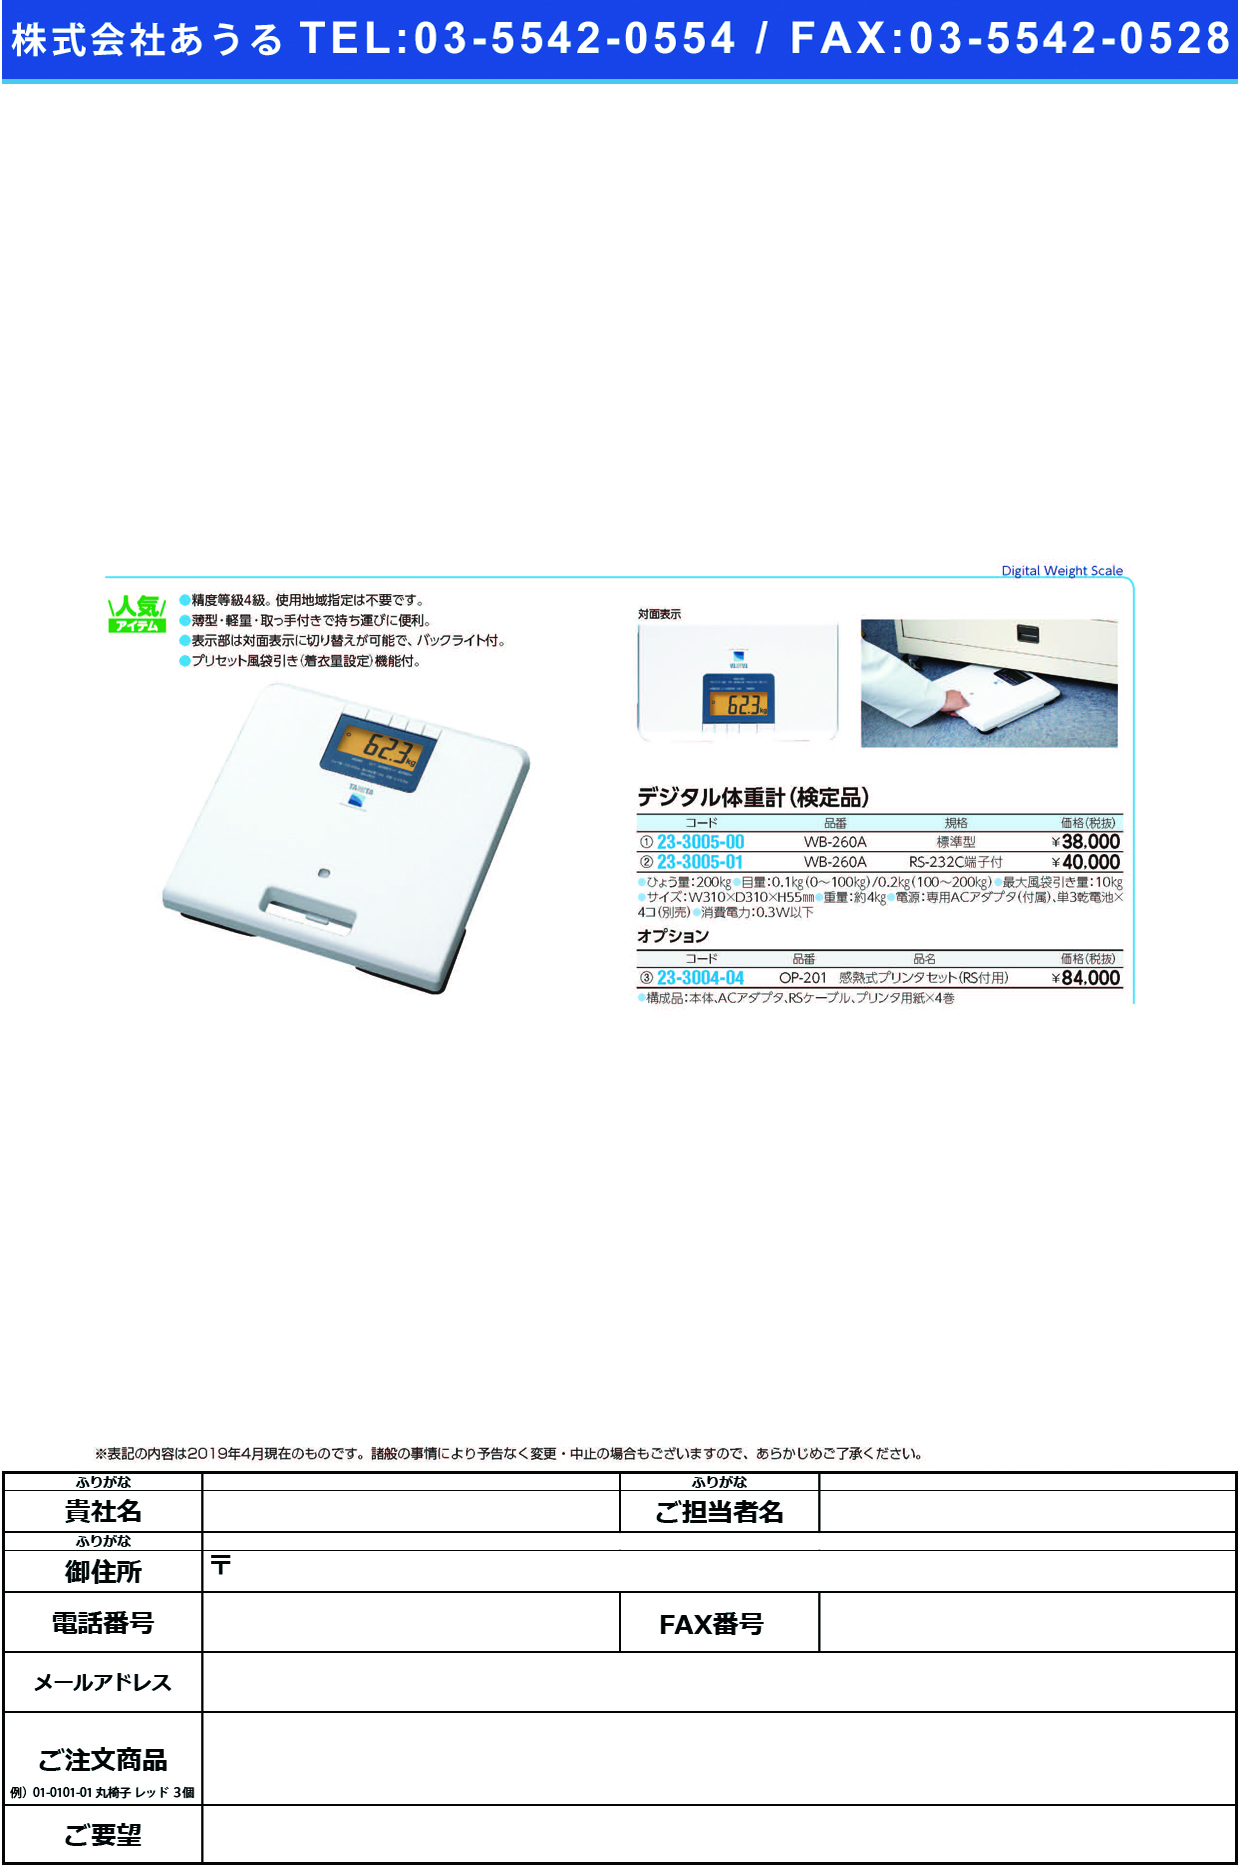 (23-3005-01)業務用デジタル体重計（検定品） WB-260A(RS-232Cﾀﾝｼﾂｷ ﾃﾞｼﾞﾀﾙﾀｲｼﾞｭｳｹｲｹﾝﾃｲﾋﾝ(タニタ)【1台単位】【2019年カタログ商品】